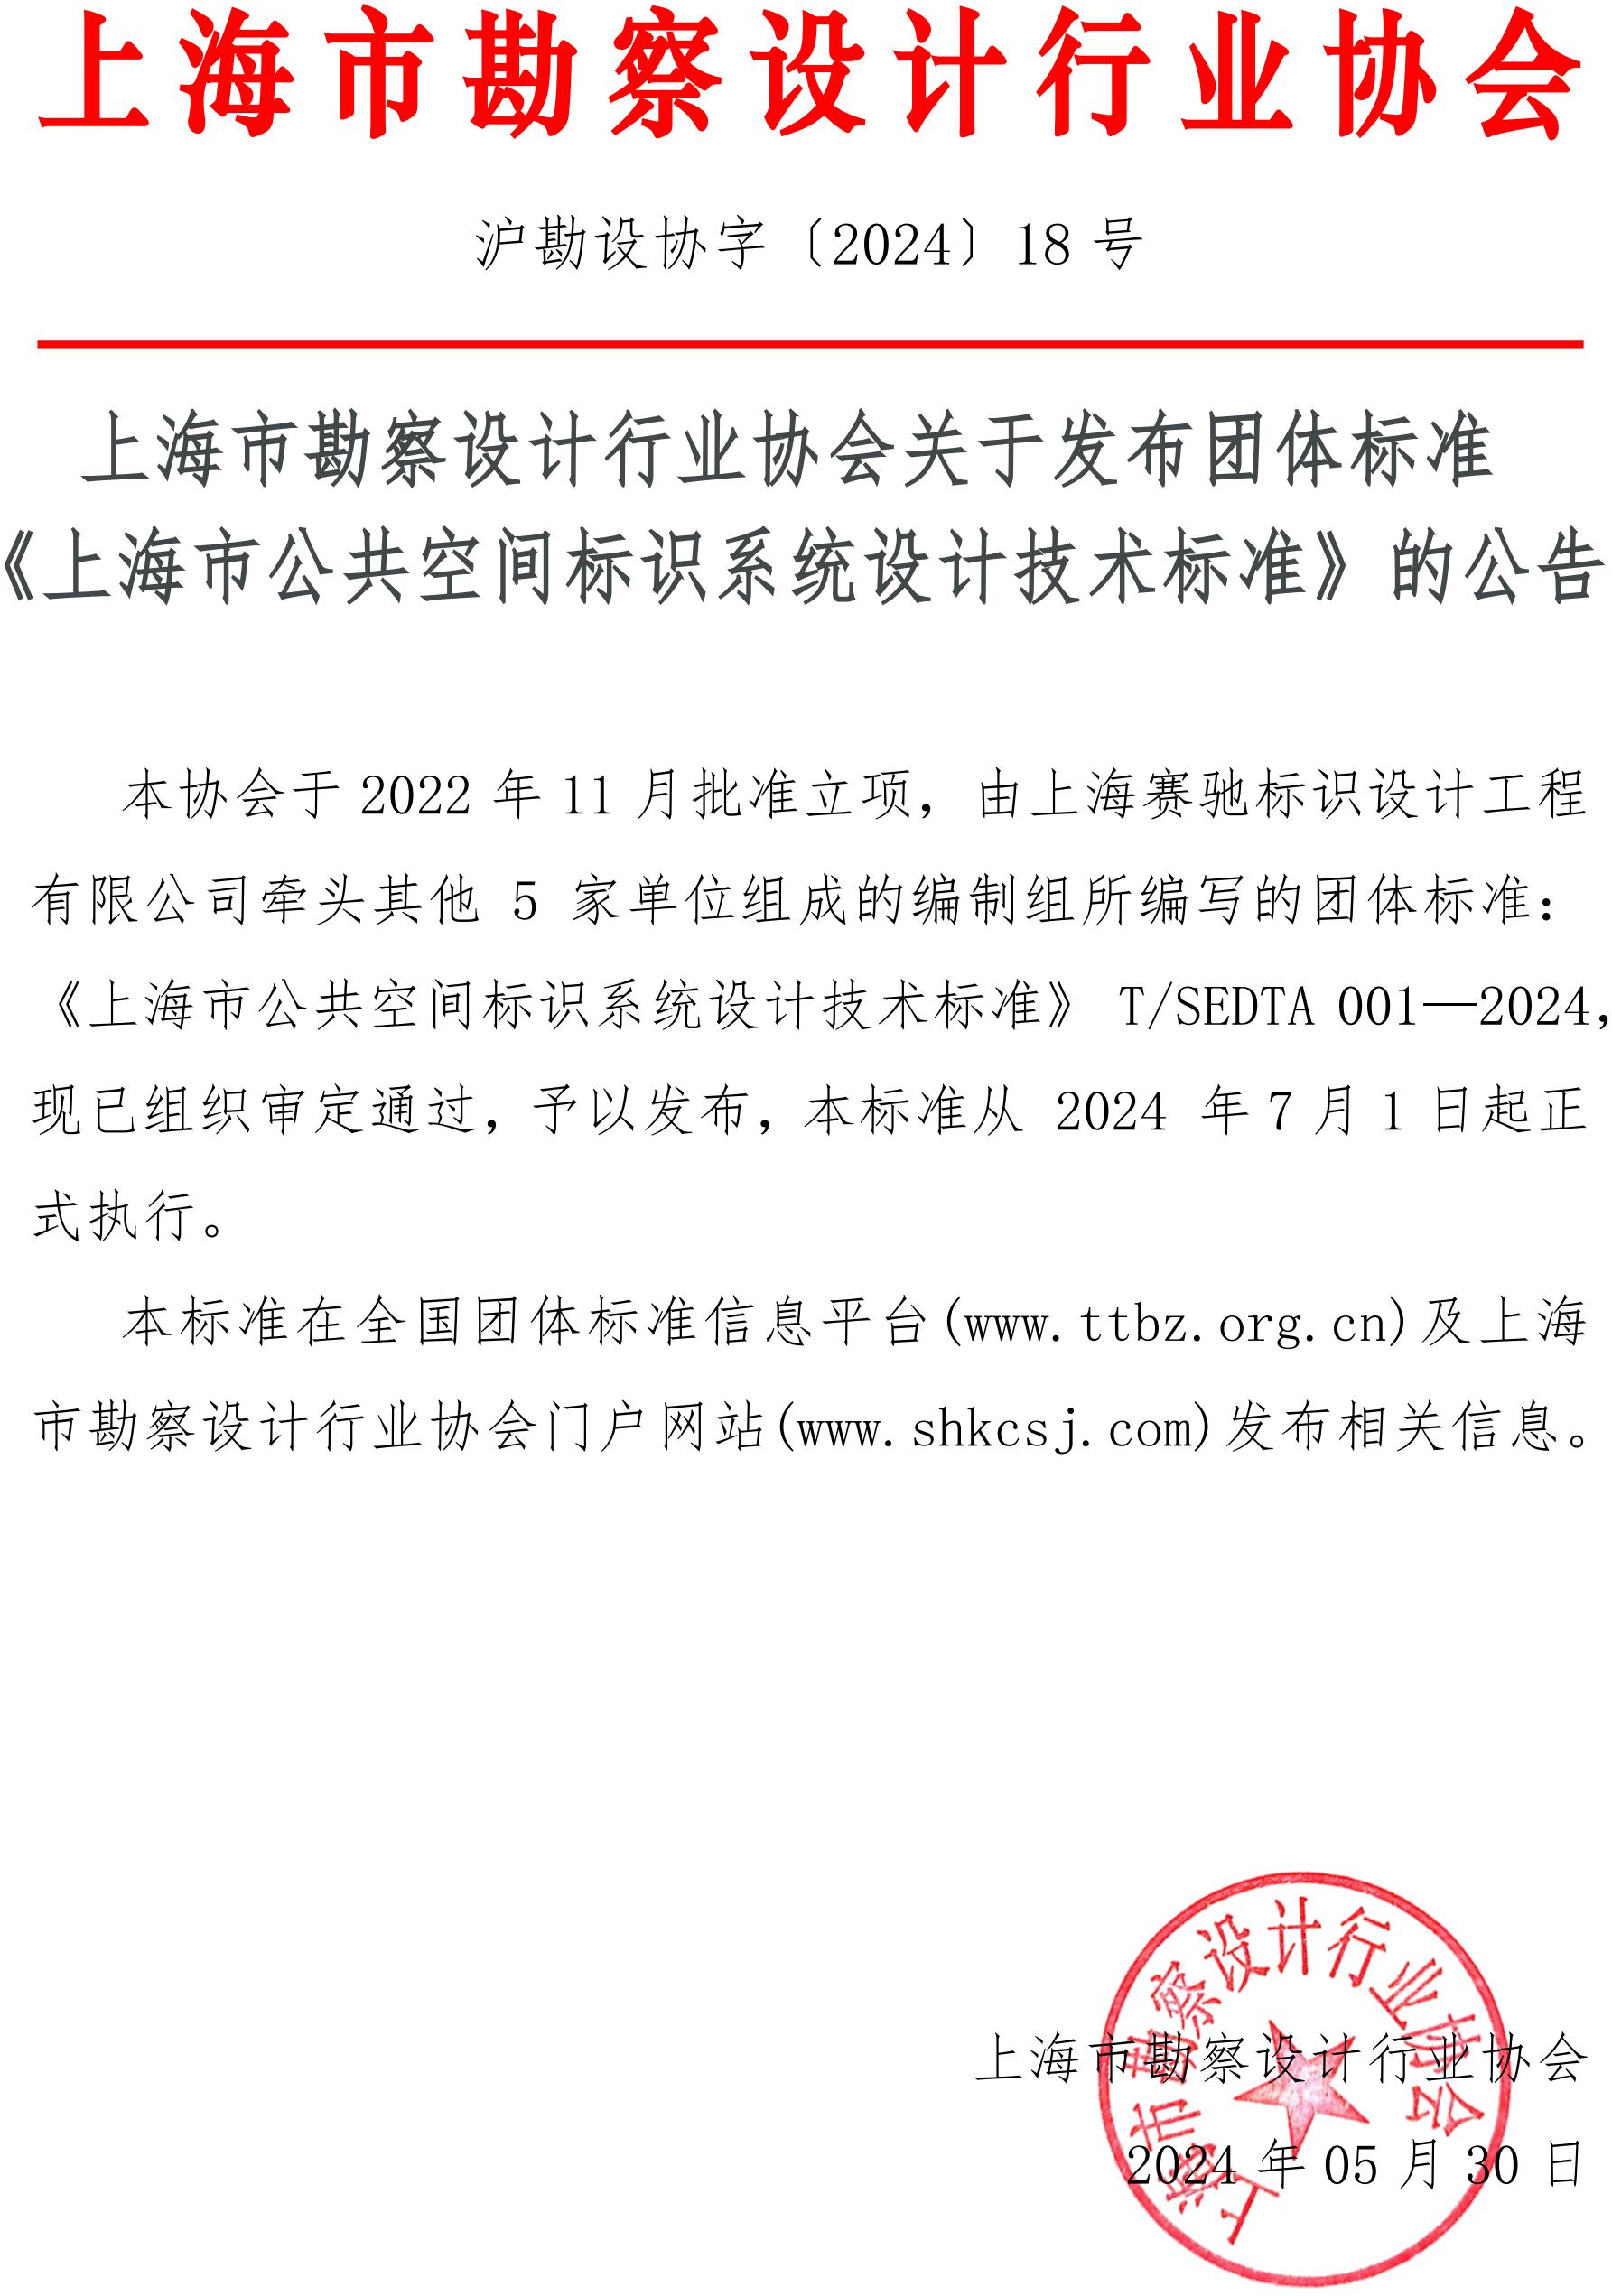 沪勘设协字〔2024〕18号 上海市勘察设计行业协会关于发布团体标准《上海市公共空间标识系统设计技术标准》的公告_00.jpg